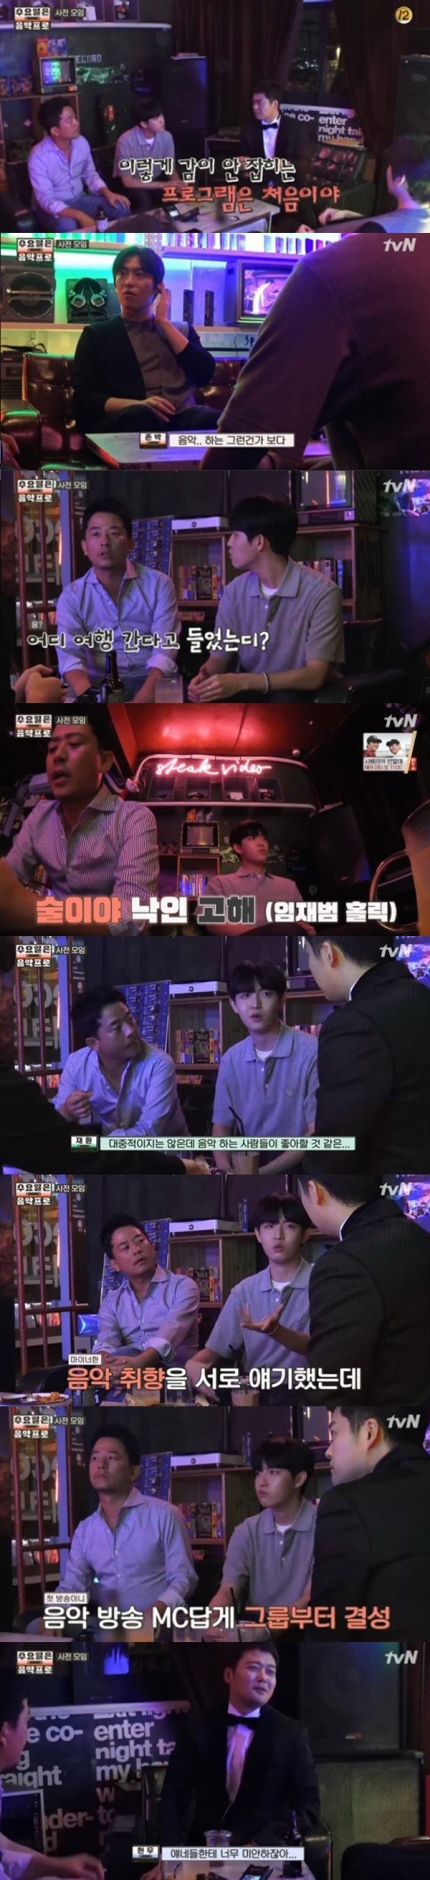 김재환_tvN 수요일은 음악프로_진짜로 음악이 남네?